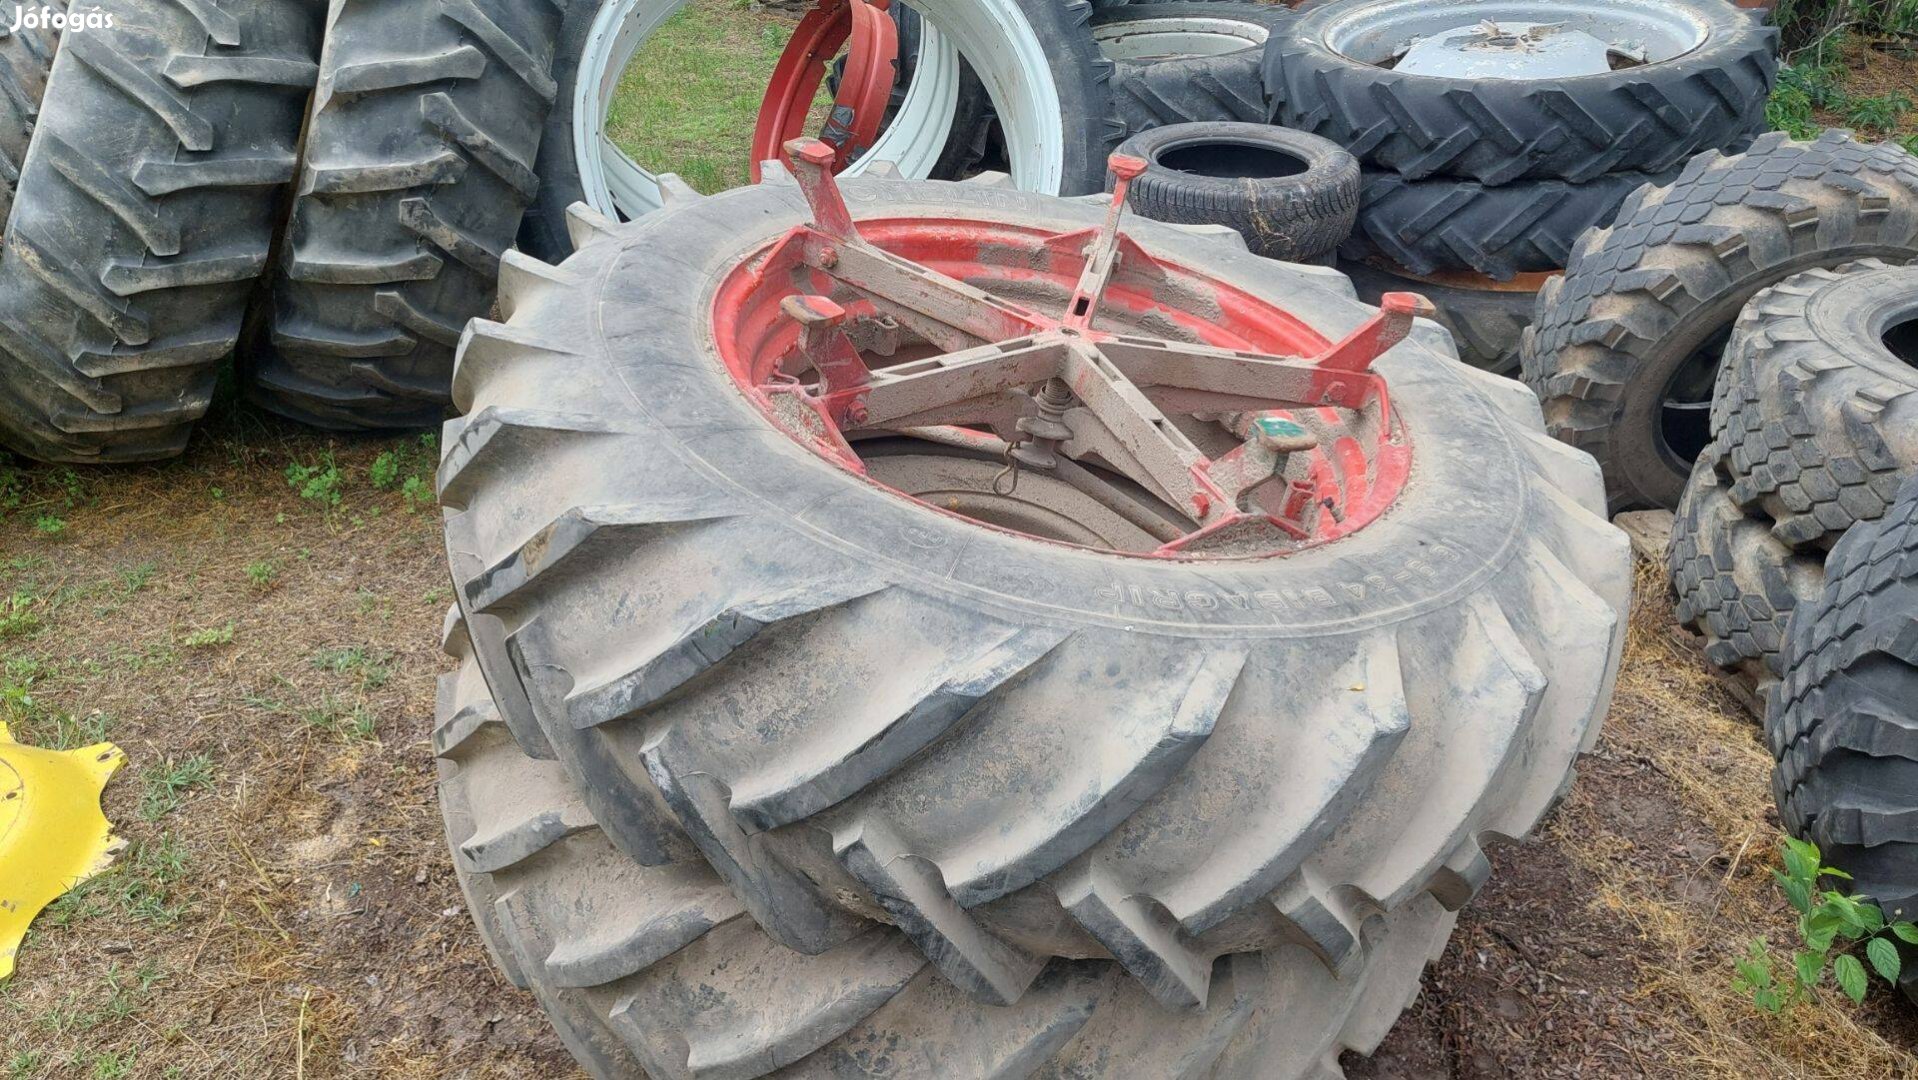 Eladó traktor kerék 16,9R34 Michelin duplakerék